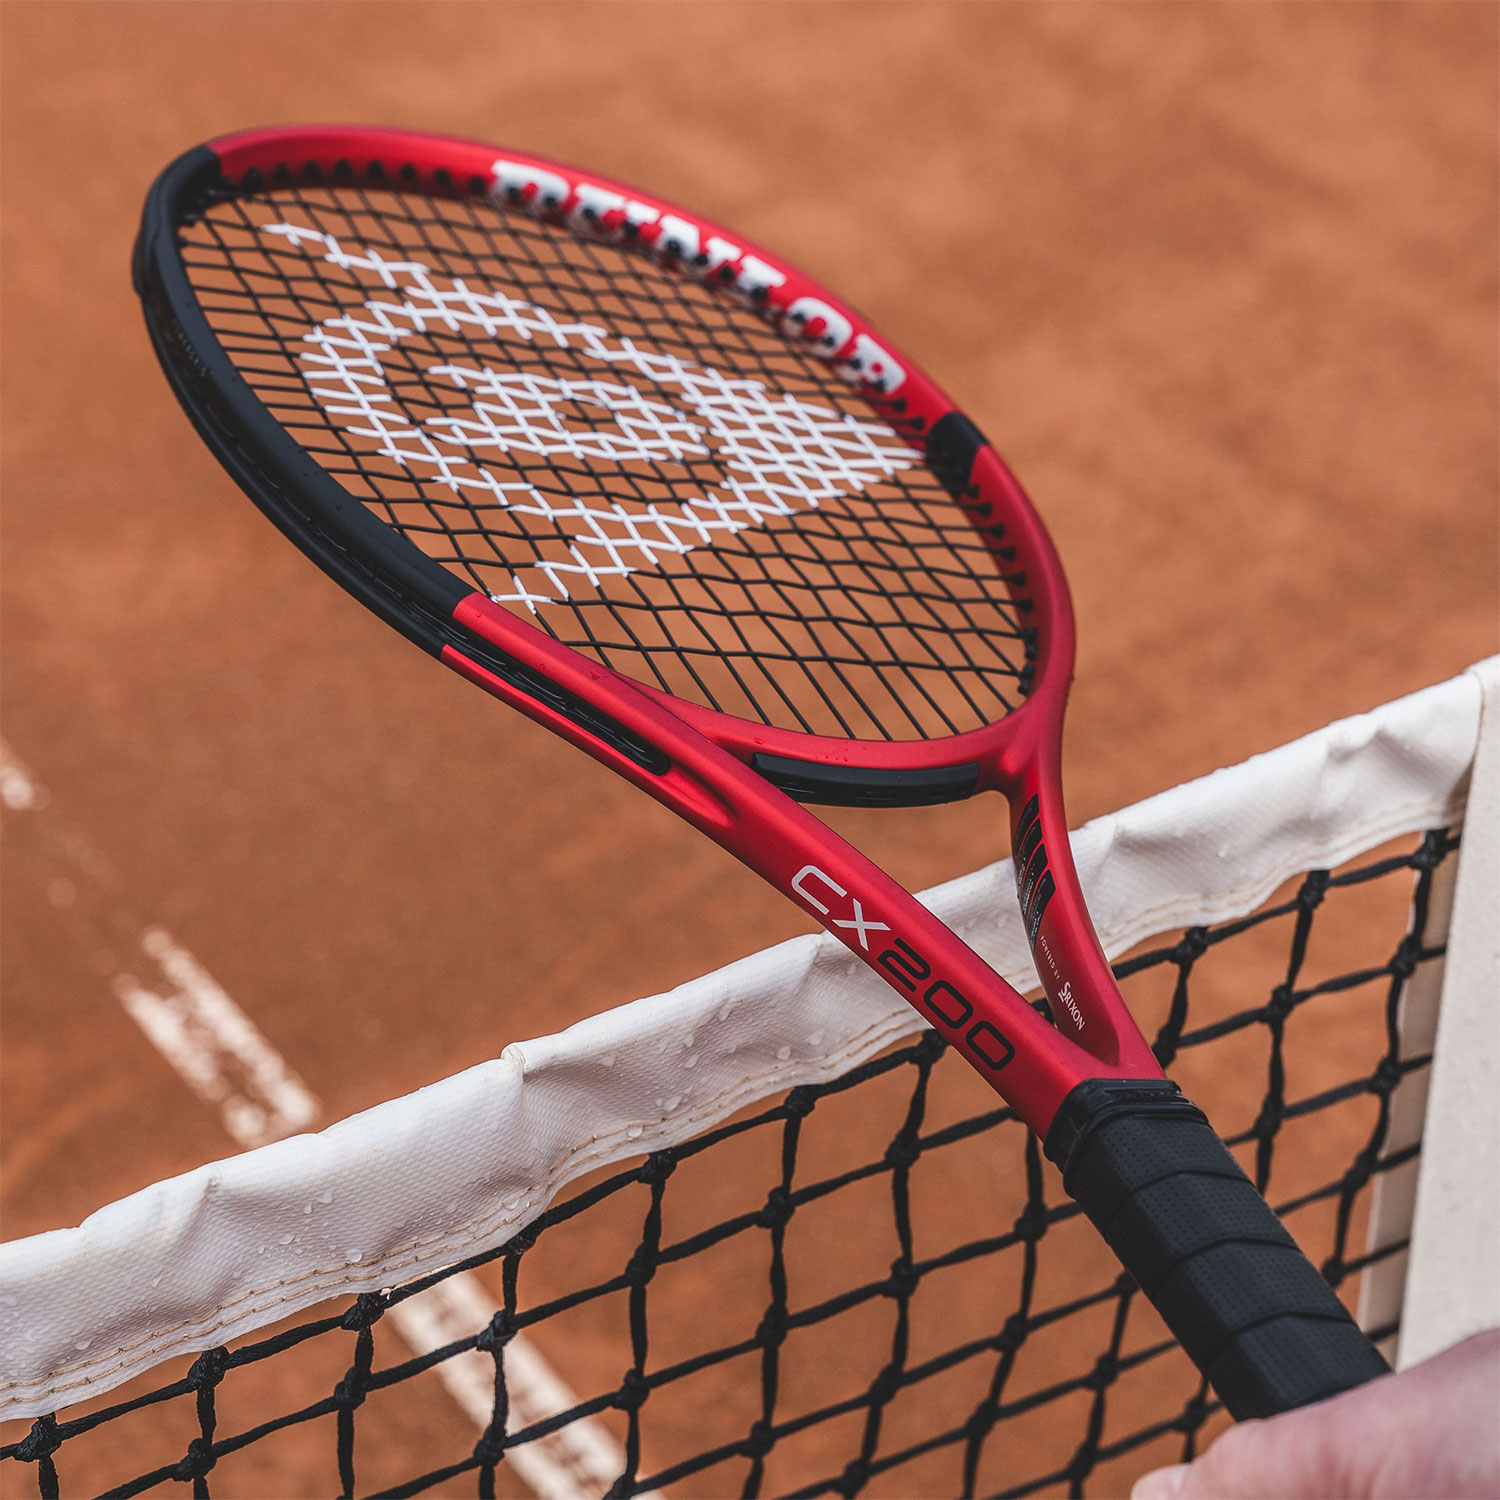 Dunlop CX  Tennis Racket   MisterTennis.com